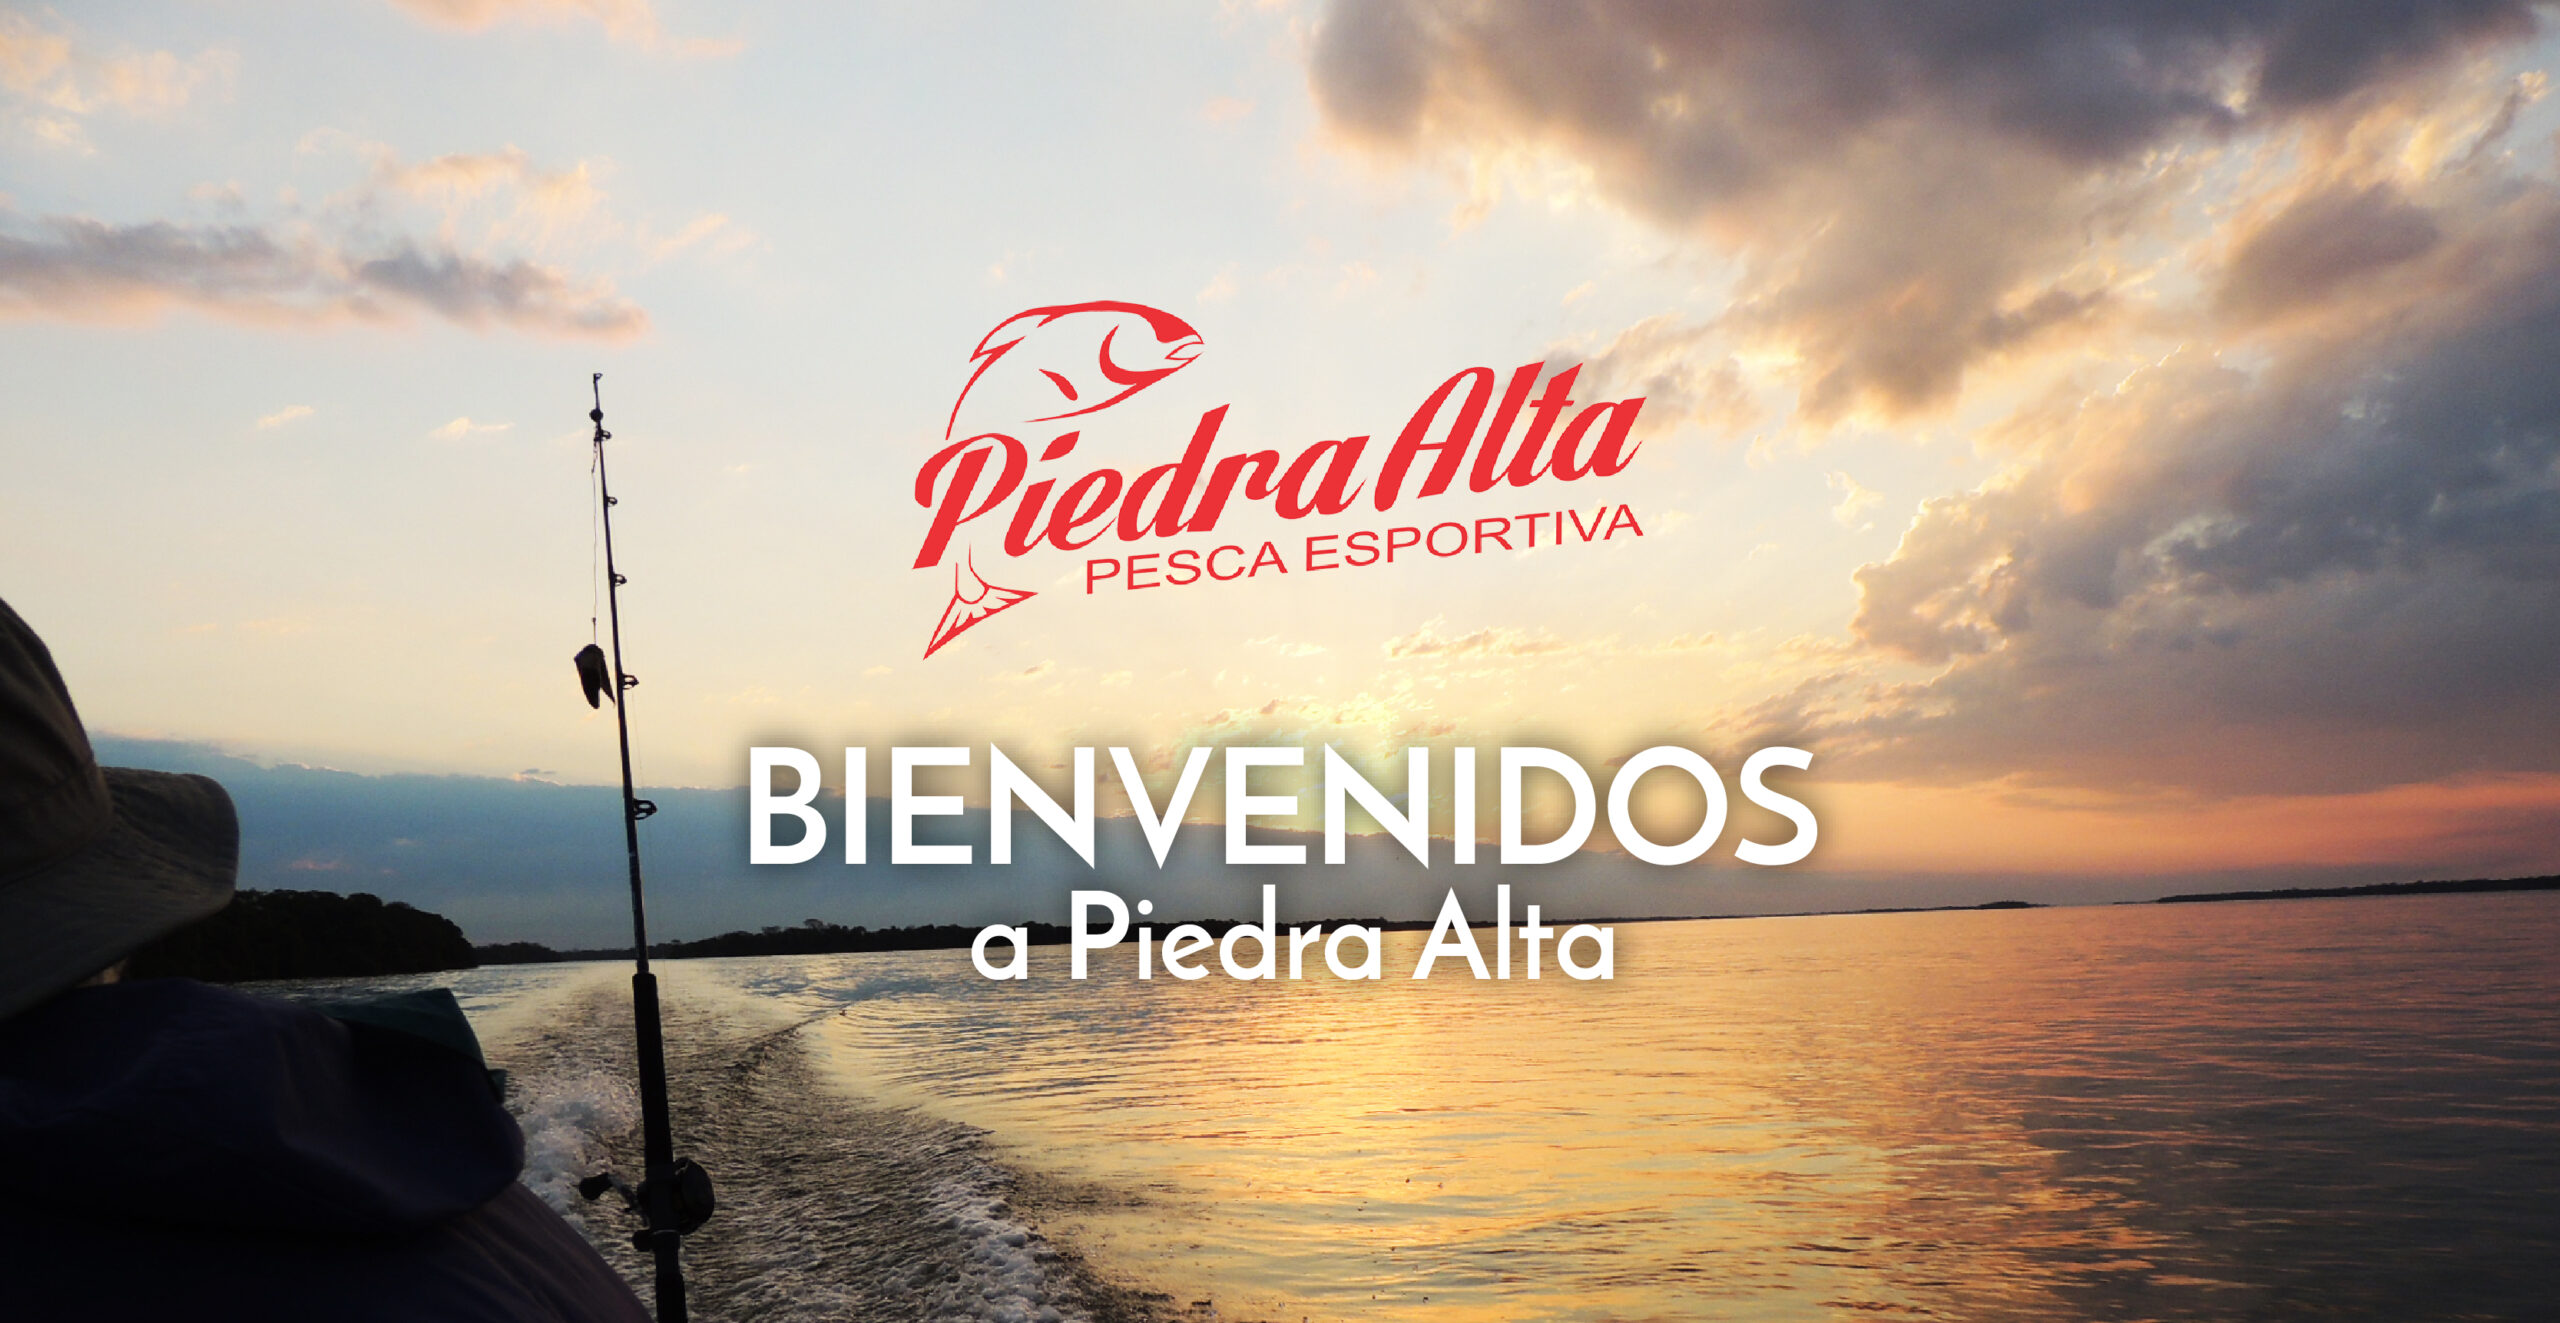 (c) Piedraalta.com.ar